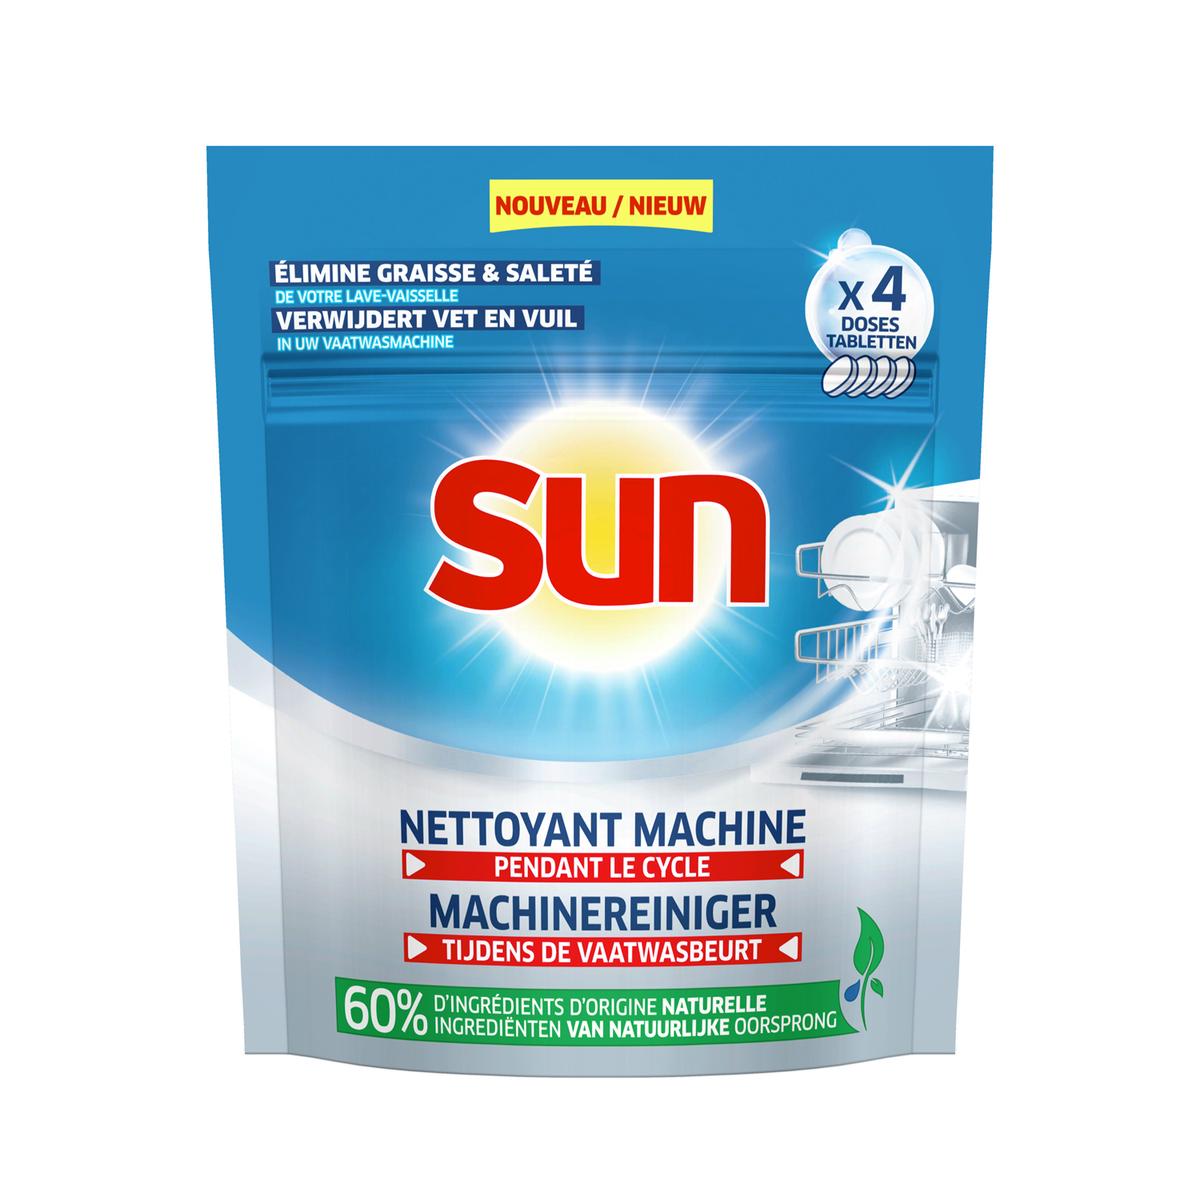 SUN Sun optimum nettoyant machine lave-vaisselle pendant le cycle 4 doses 